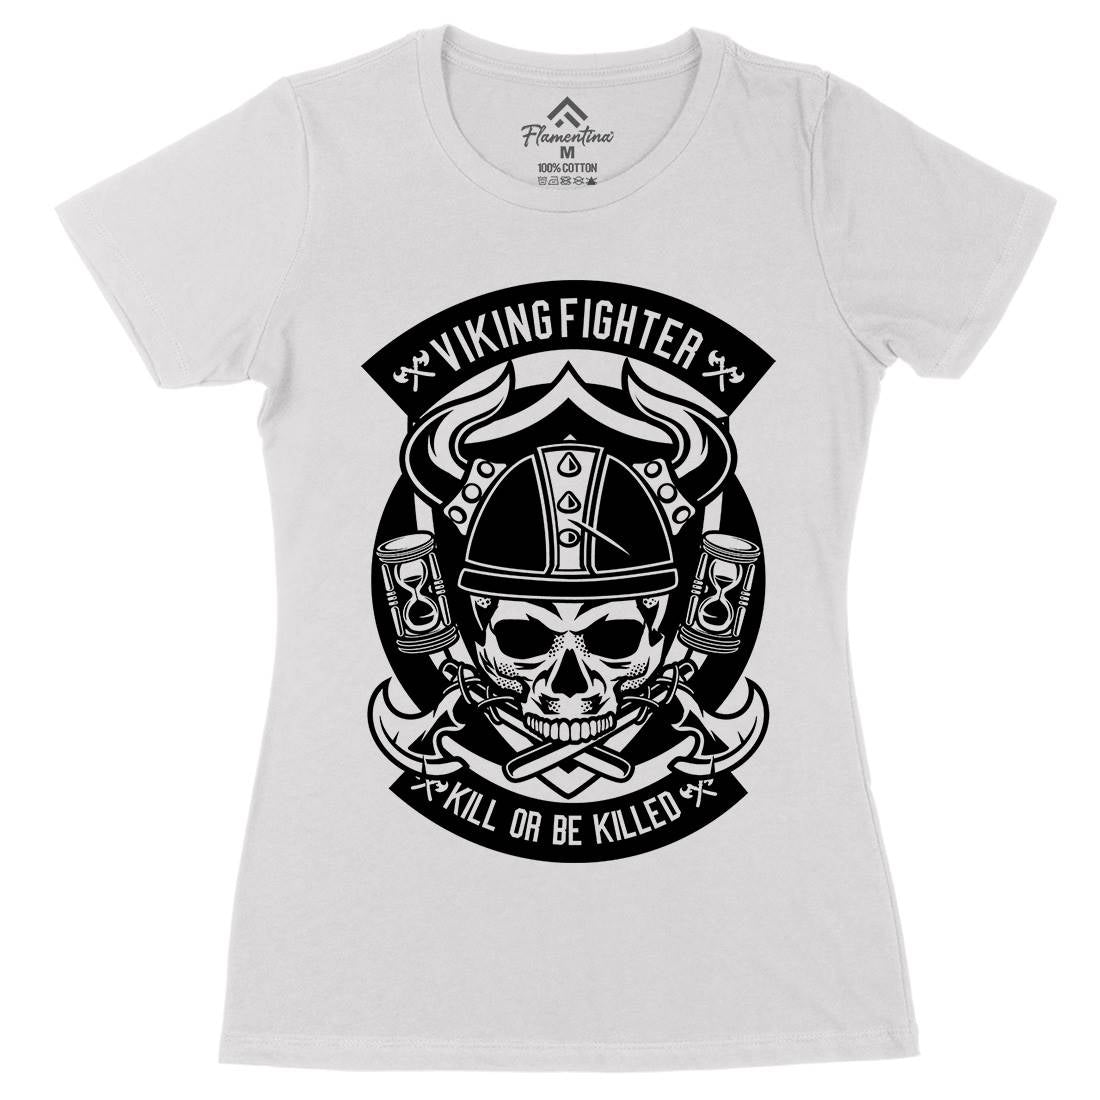 Viking Fighter Womens Organic Crew Neck T-Shirt Retro B664